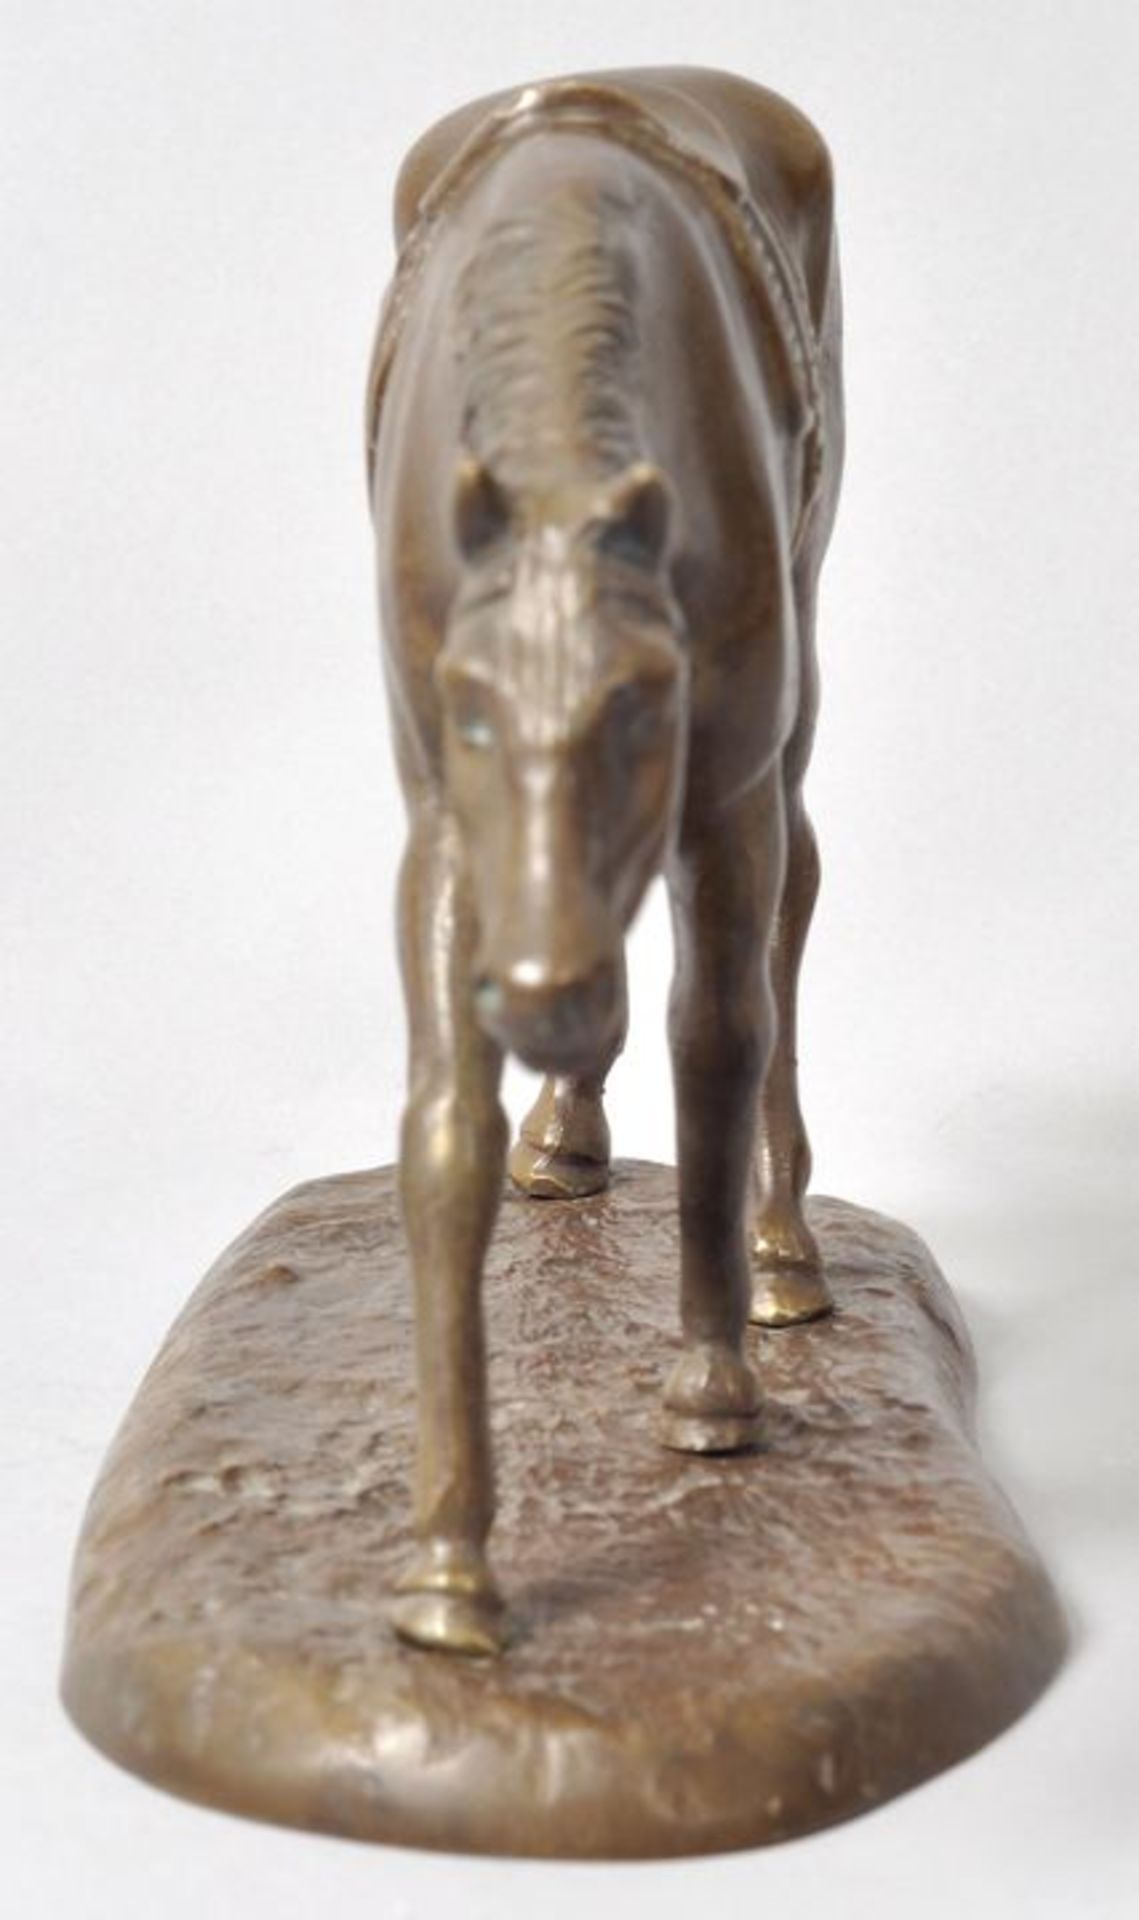 Unbekannt, Anf. 20. Jh. Rennpferd, gehend. Bronze, patiniert, H. 14,5 cm - Bild 6 aus 7